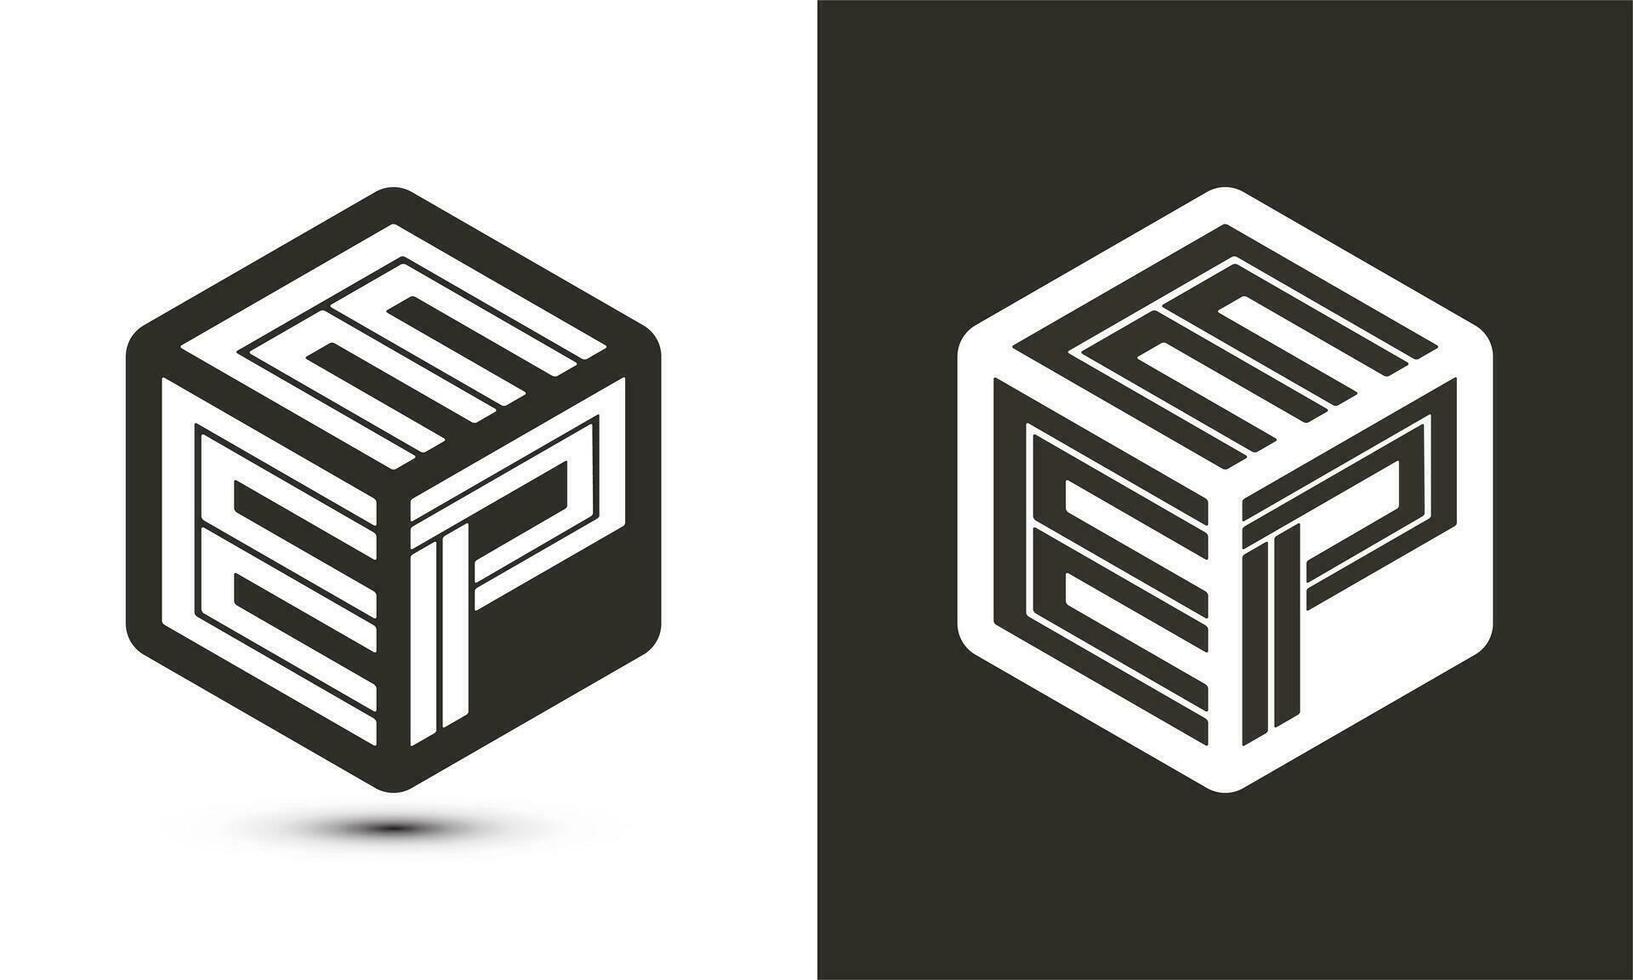 eep brev logotyp design med illustratör kub logotyp, vektor logotyp modern alfabet font överlappning stil.